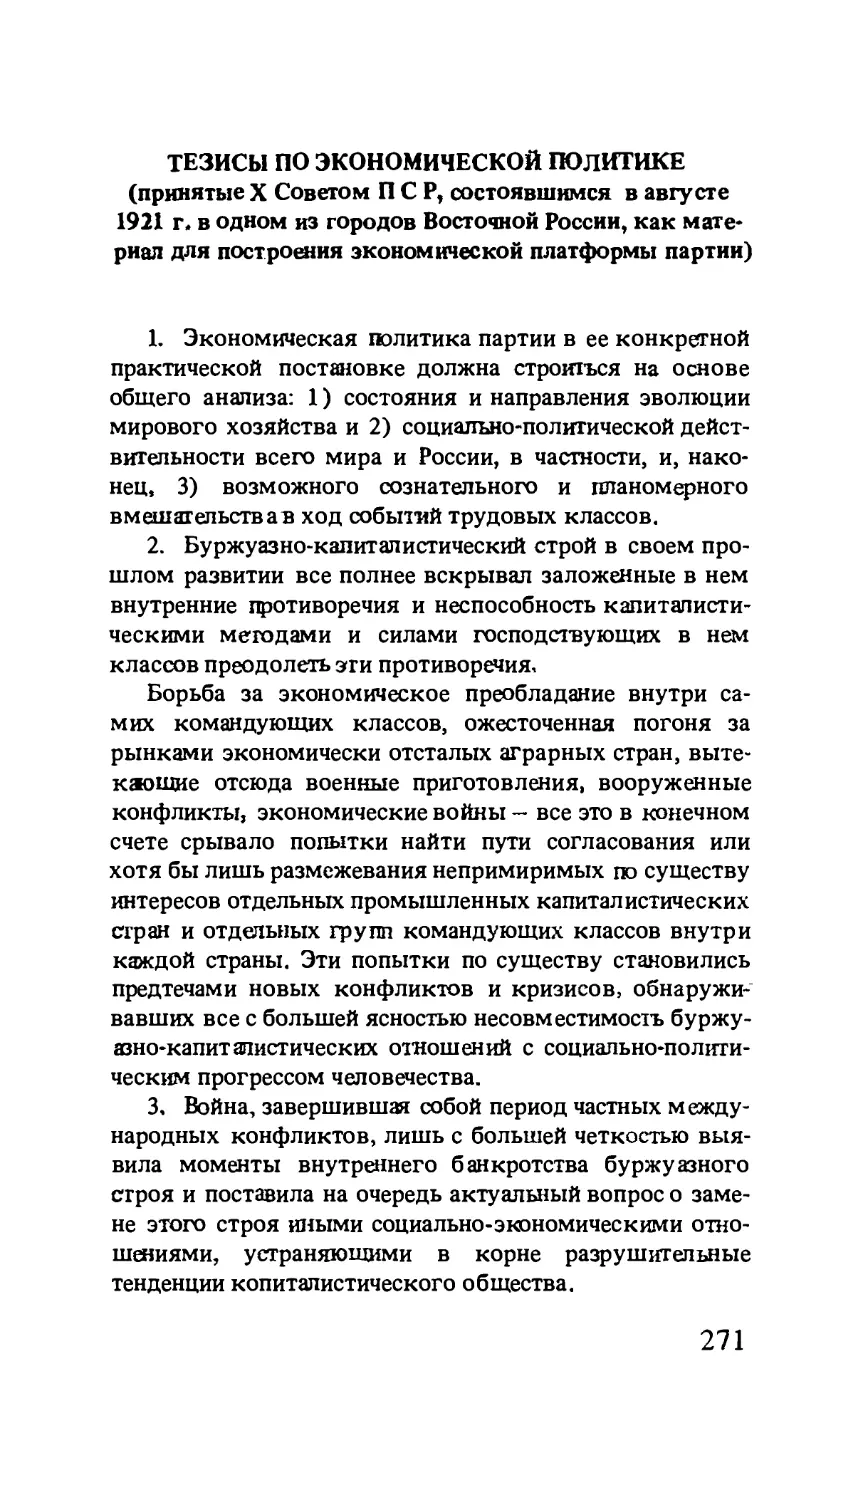 Тезисы по экономической политике, принятые X Советом ПСР, состоявшимся в августе 1921 г. в одном из городов Восточной России, как материал для построения экономической платформы партии